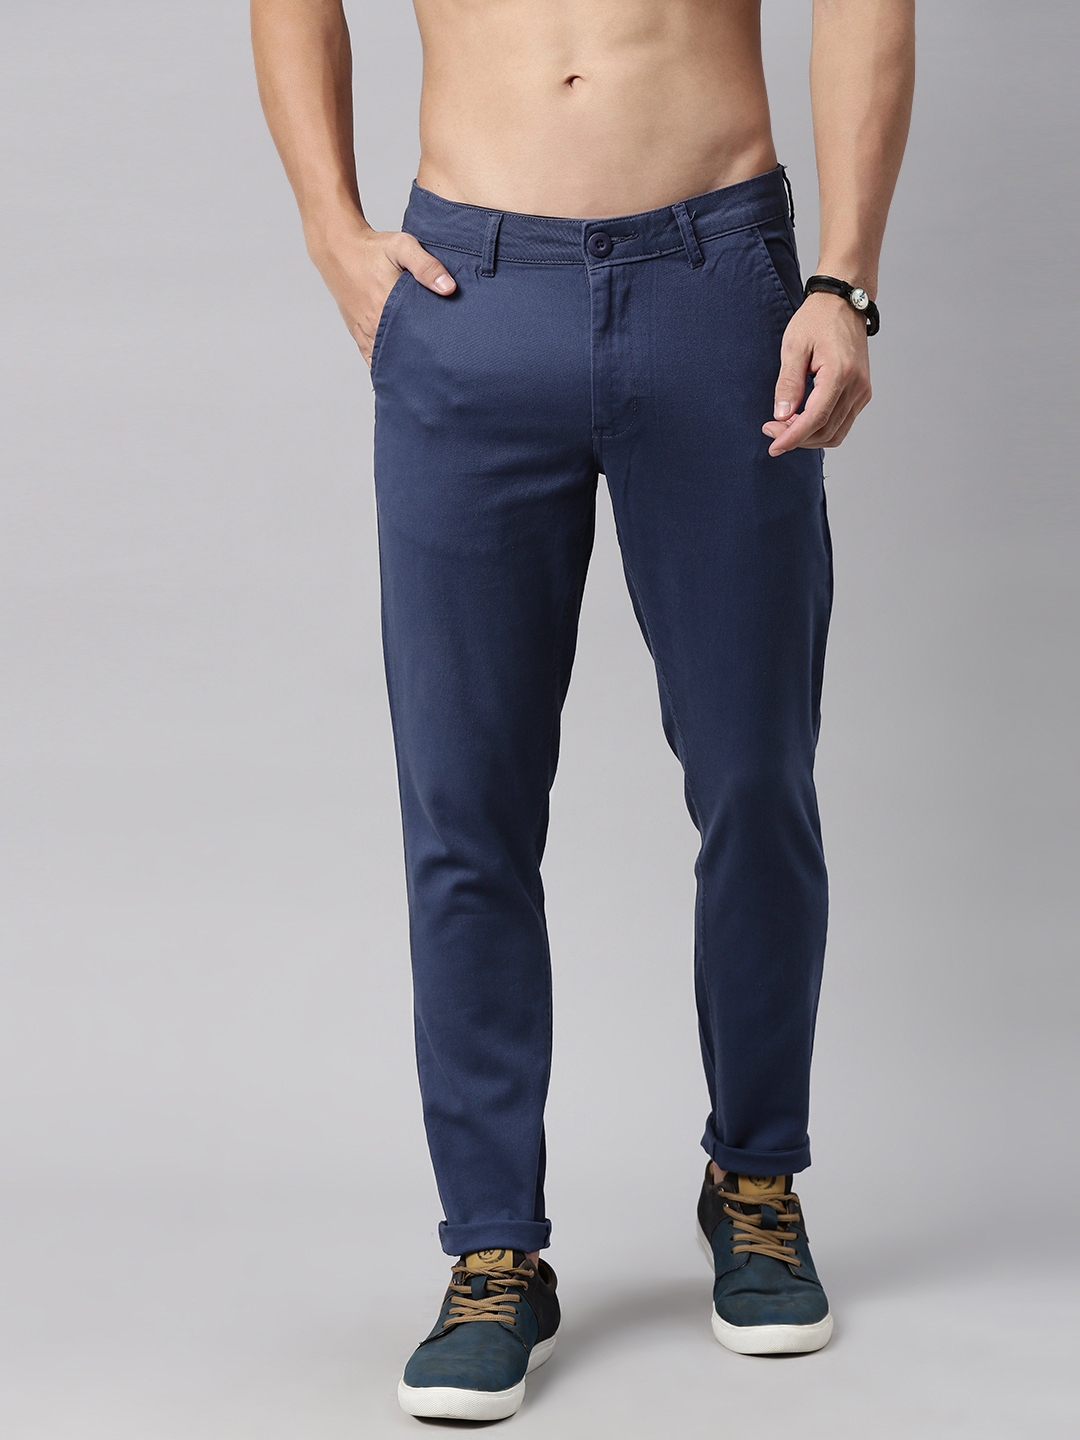 Buy Roadster Men Navy Blue Trousers - Trousers for Men 13859282 | Myntra